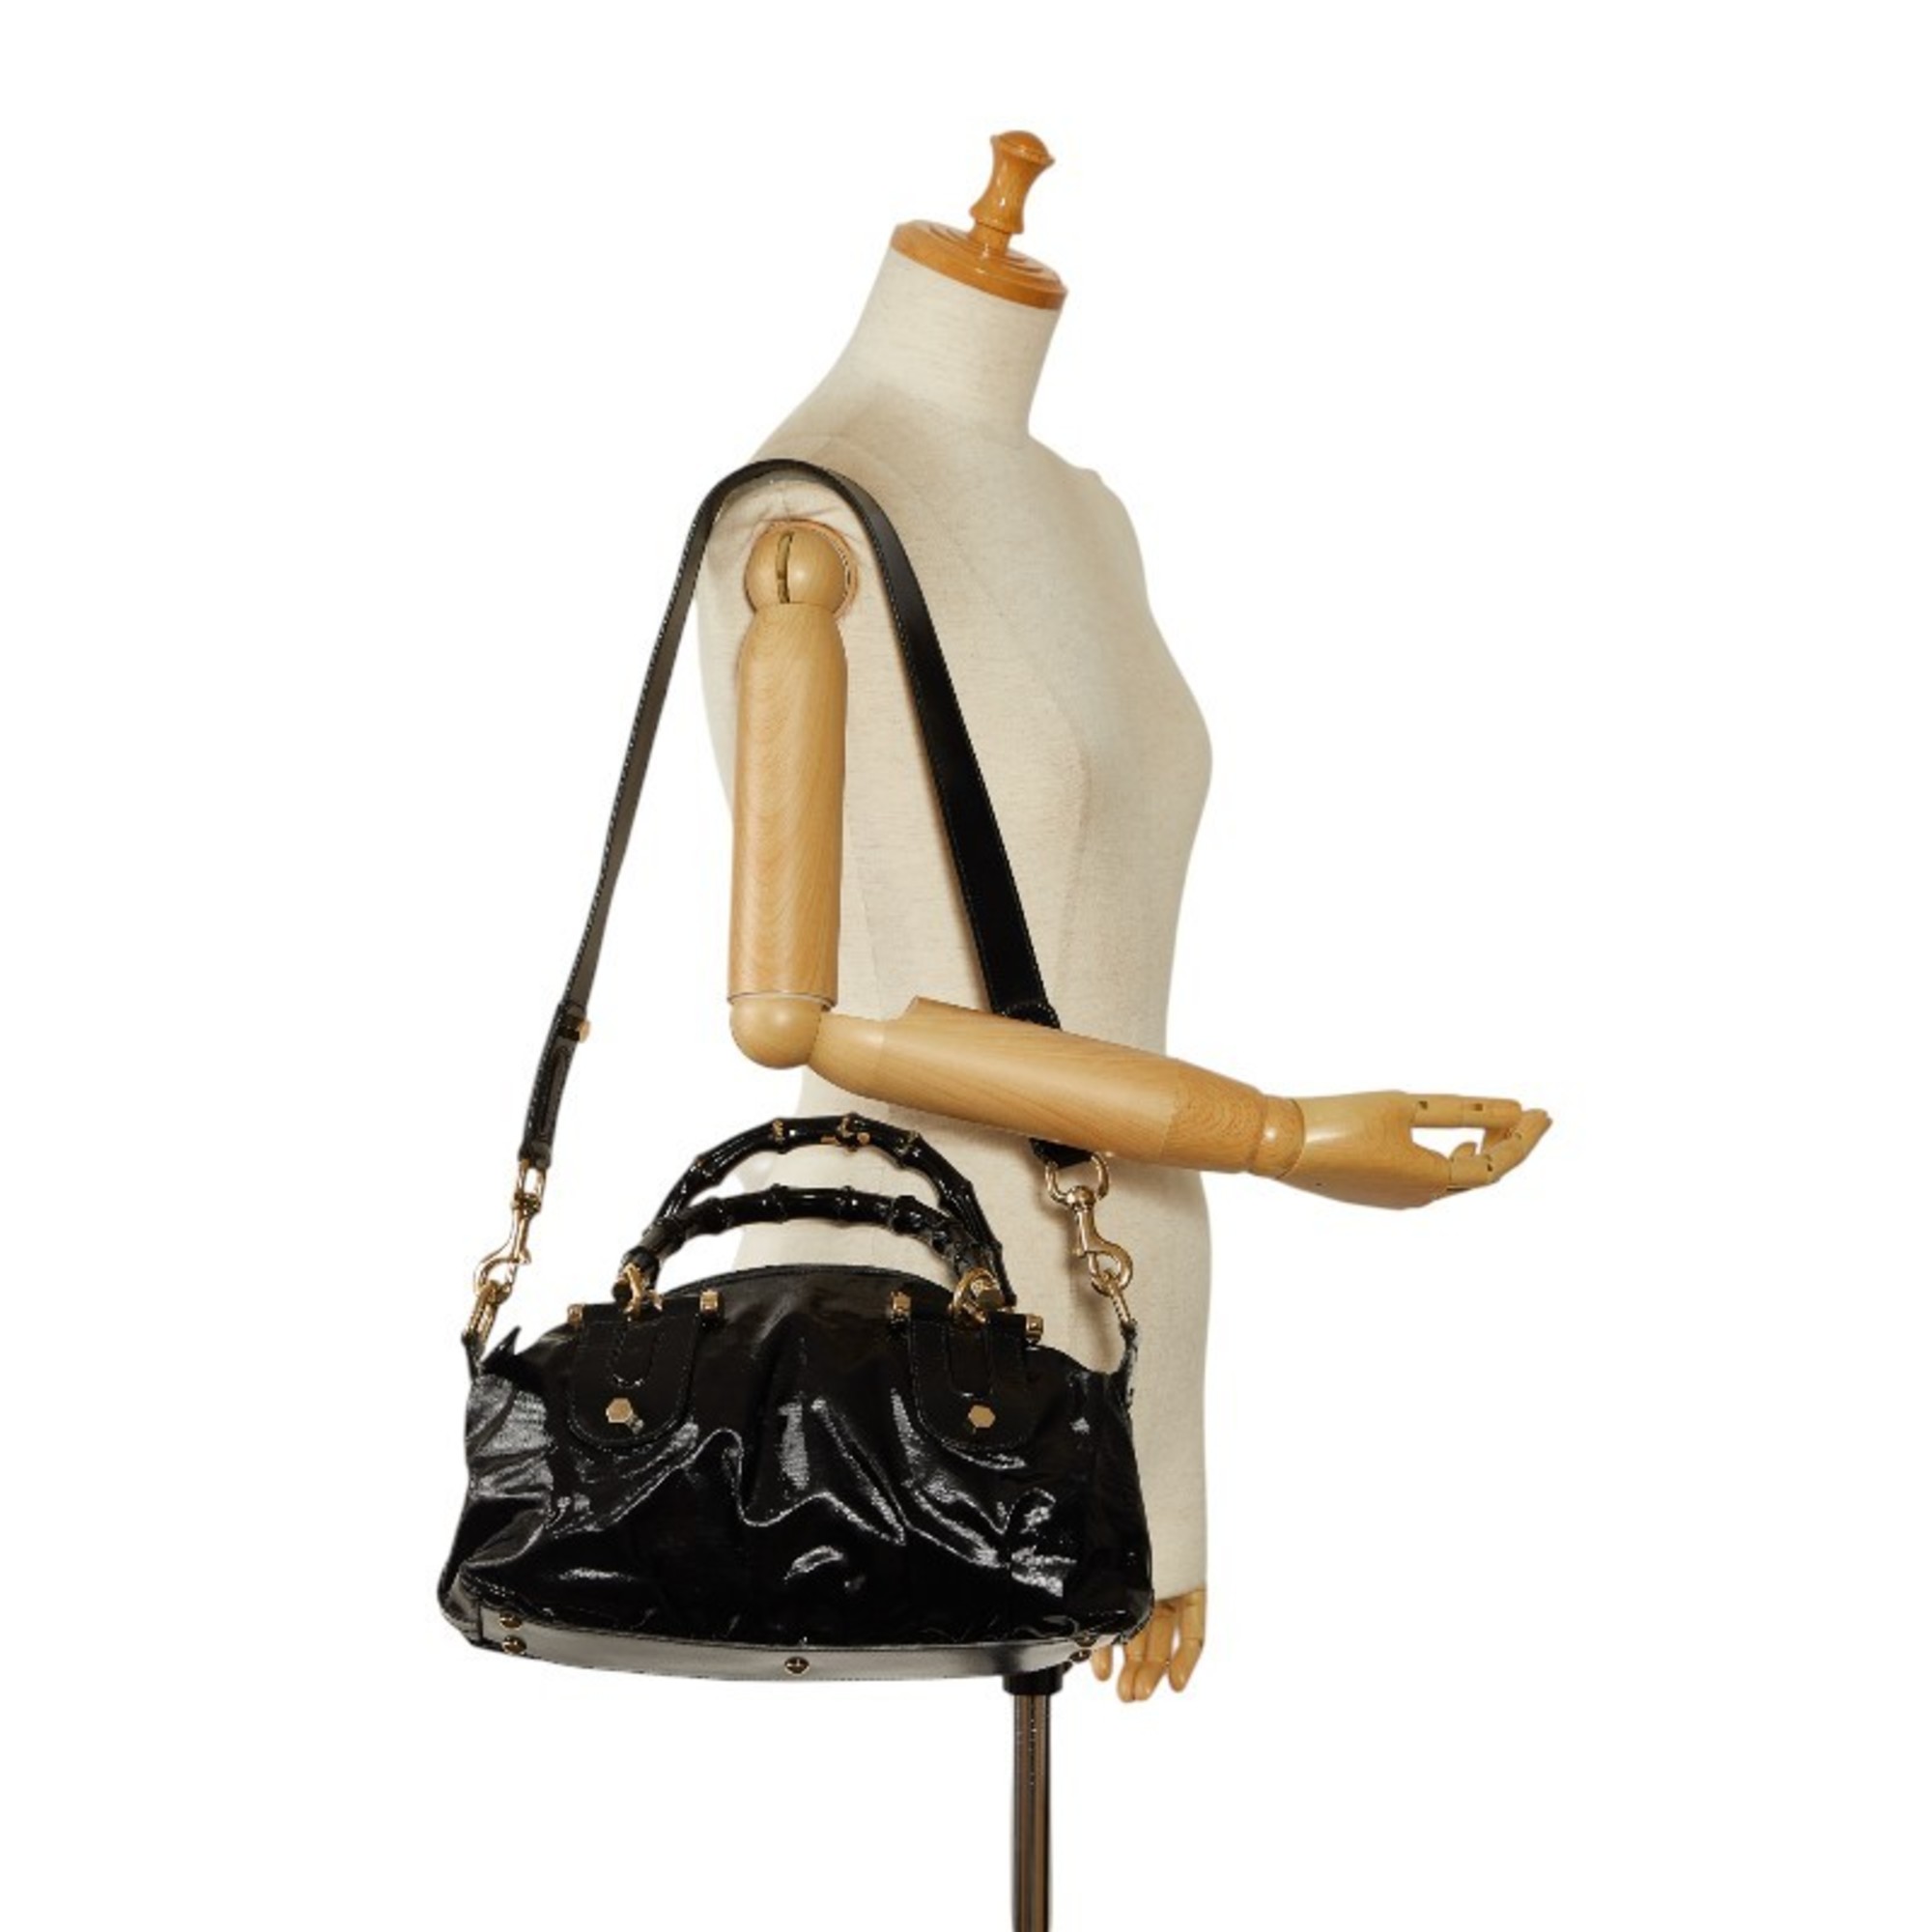 Gucci Bamboo Handbag Shoulder Bag 189869 Black PVC Enamel Women's GUCCI